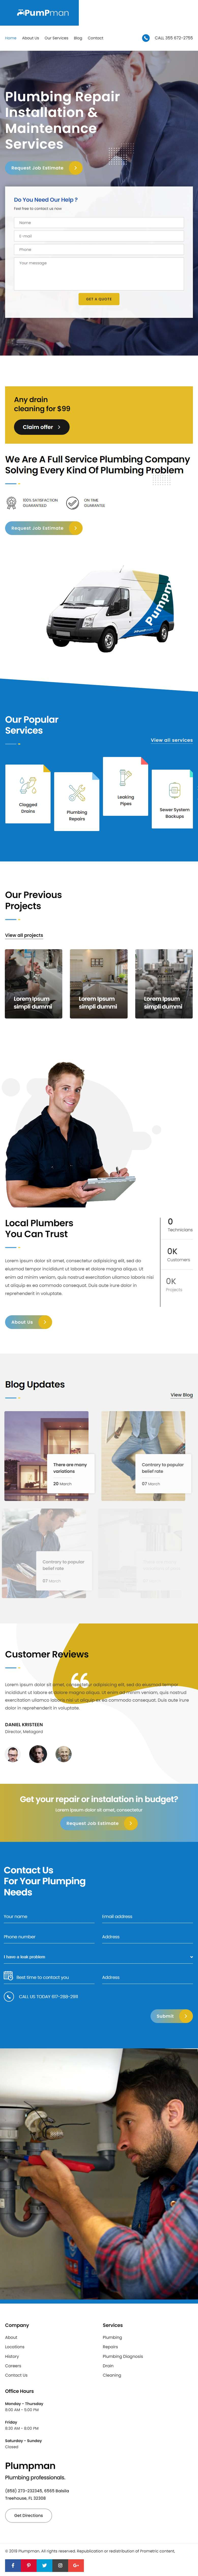 水管维修工上门服务网站模板